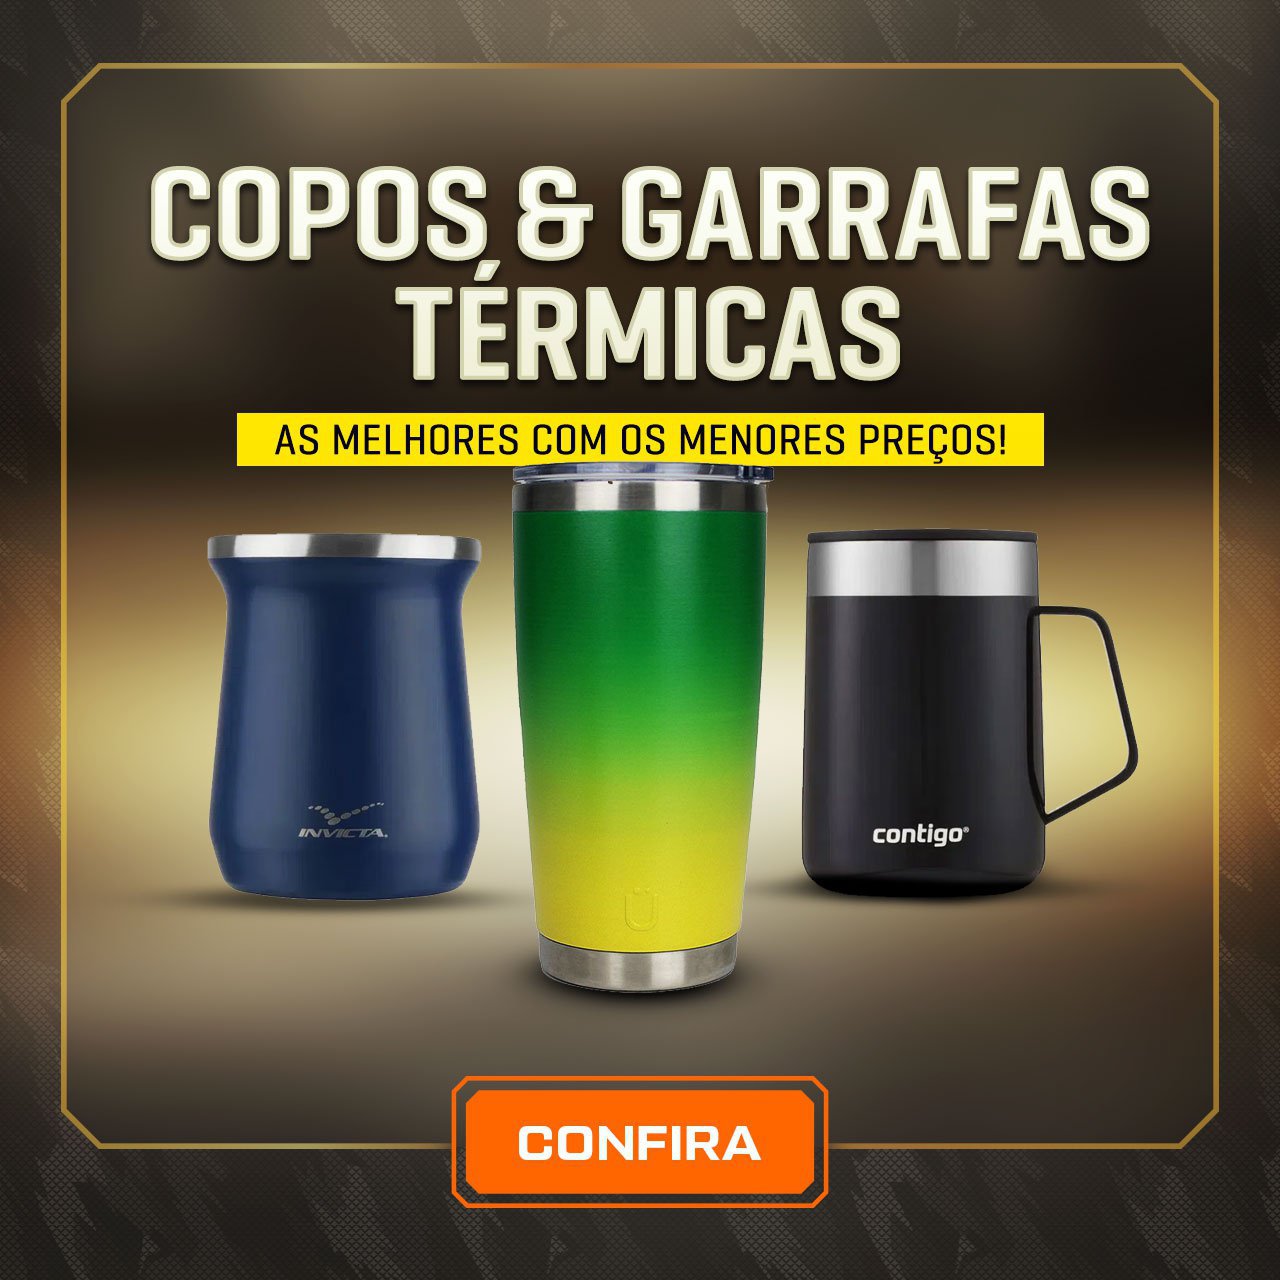 Copos & Garrafas térmicas - As melhores com os menores preços!